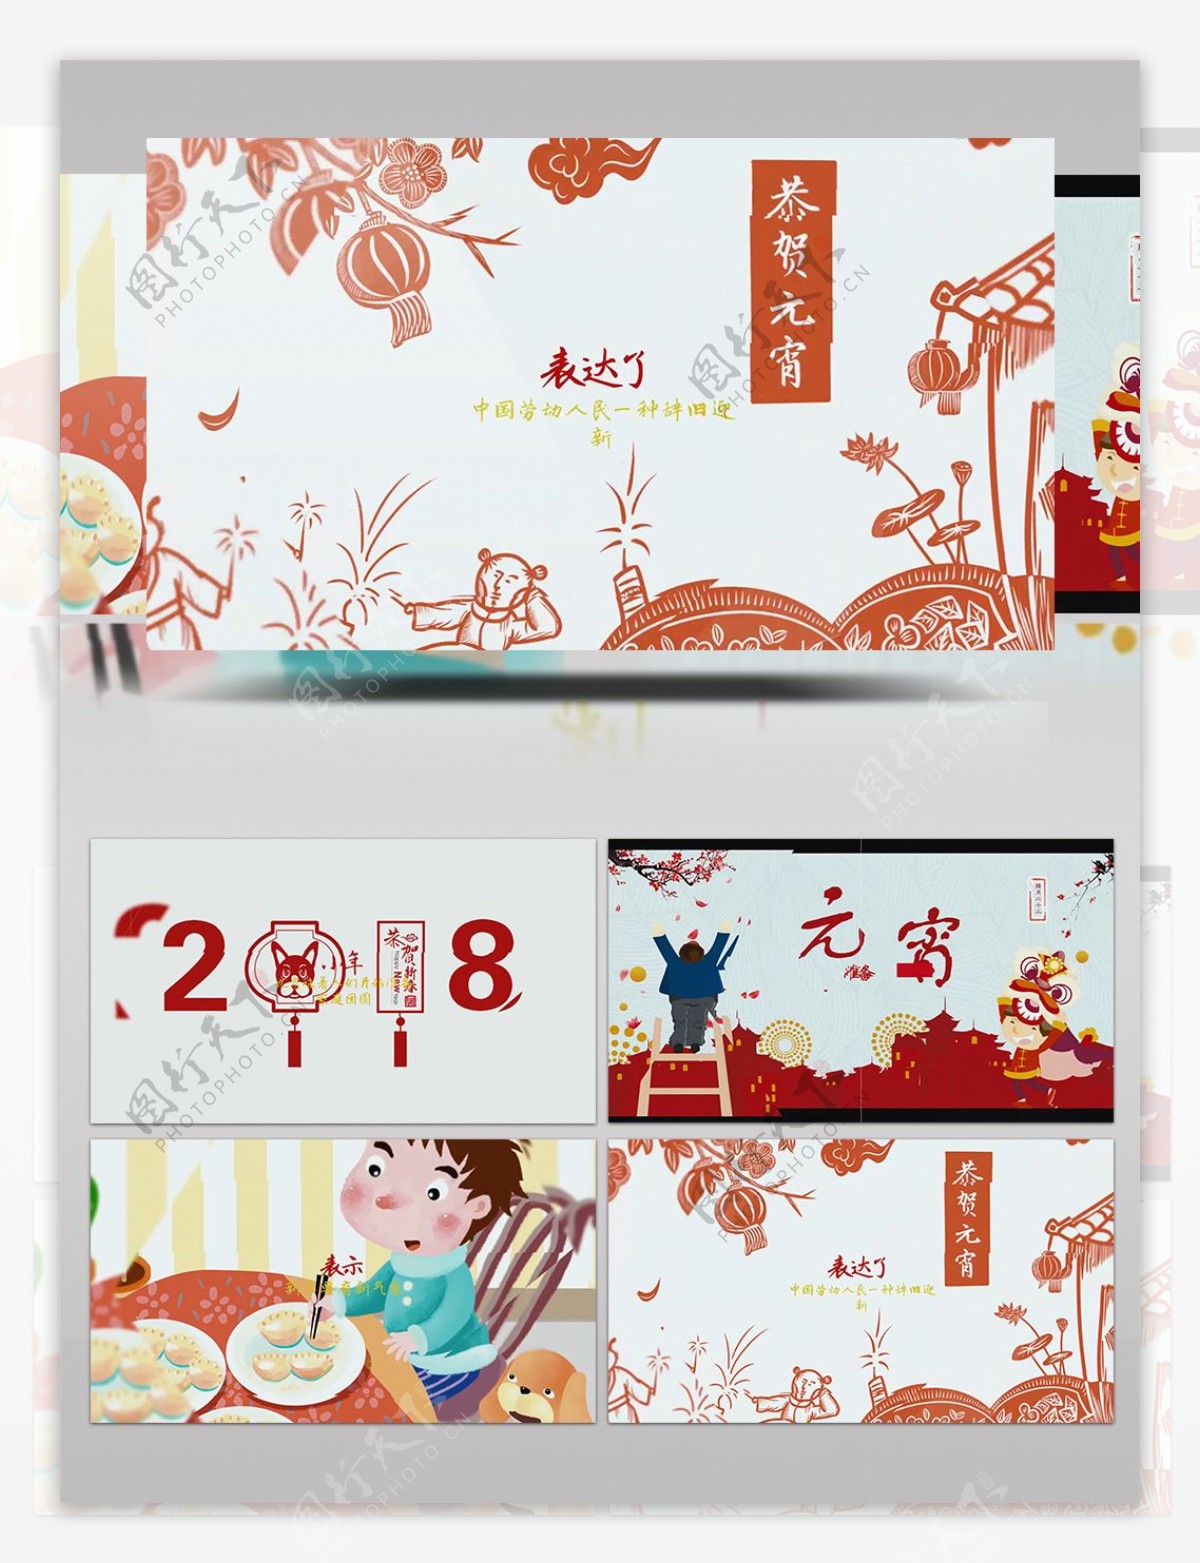 中国传统习俗节日红色喜庆元宵AE模板